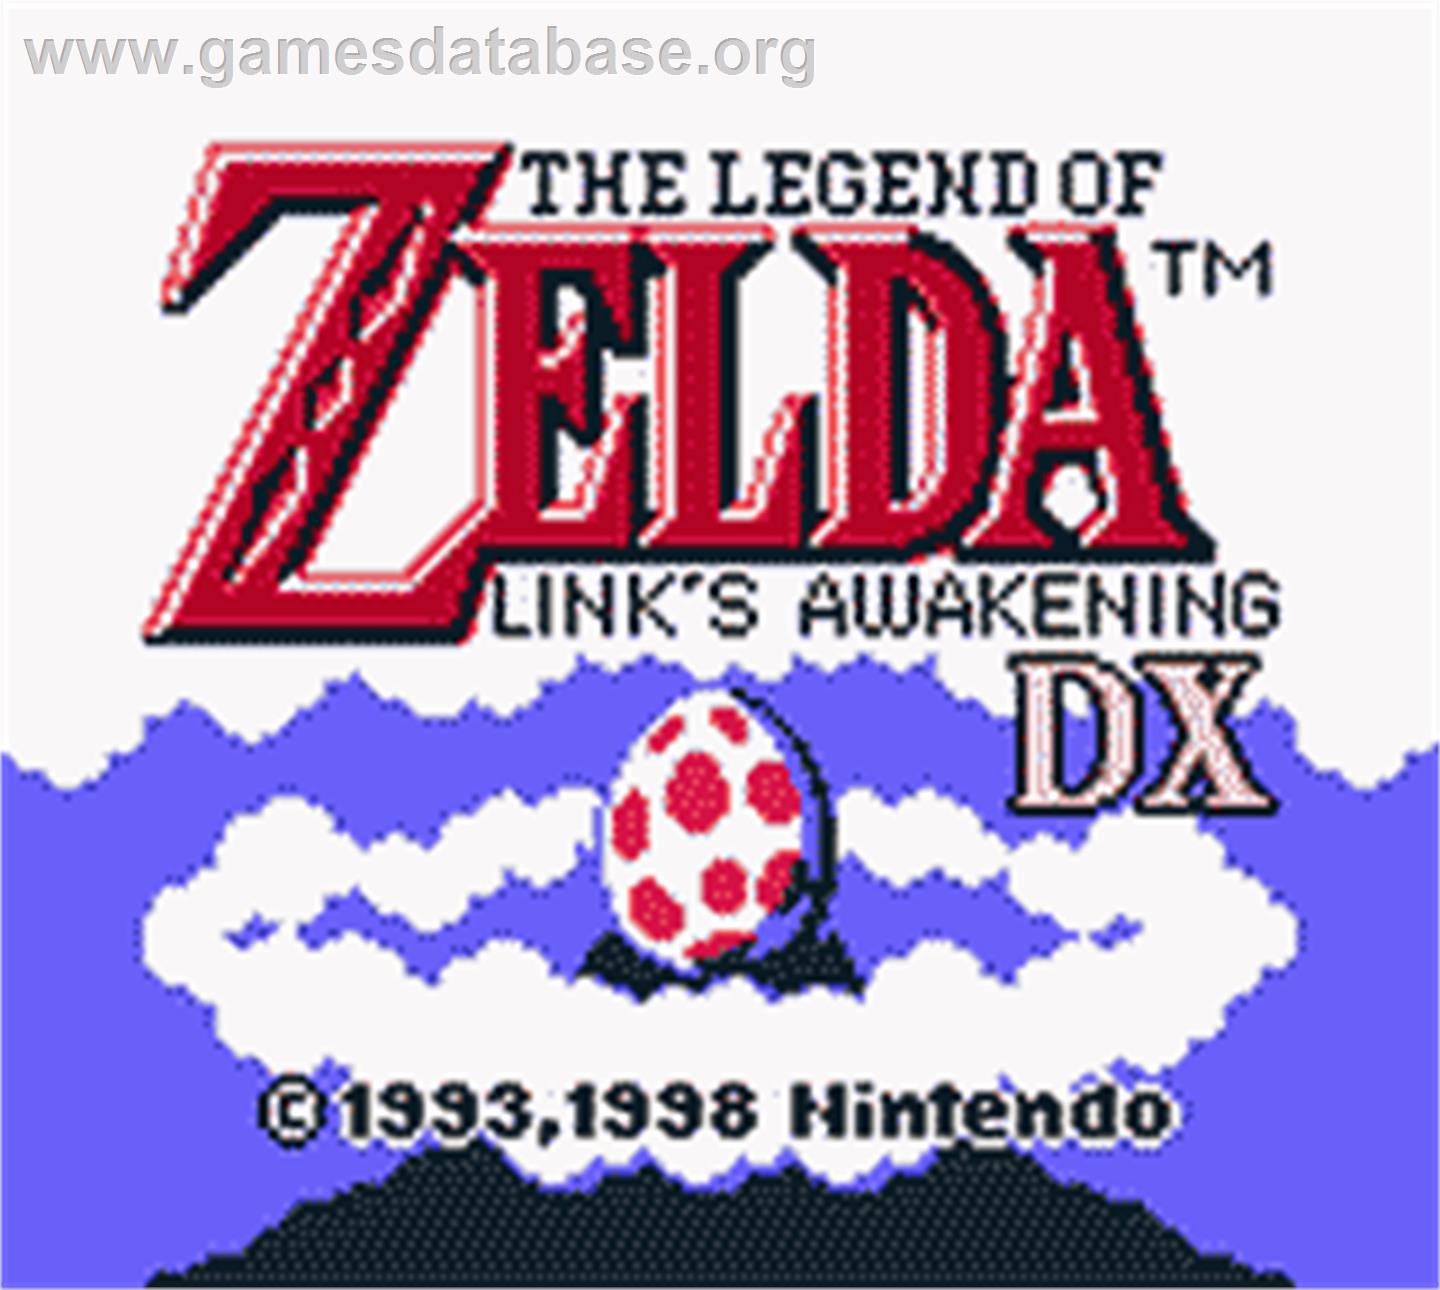 Legend of Zelda: Link's Awakening DX - Nintendo Game Boy Color - Artwork - Title Screen